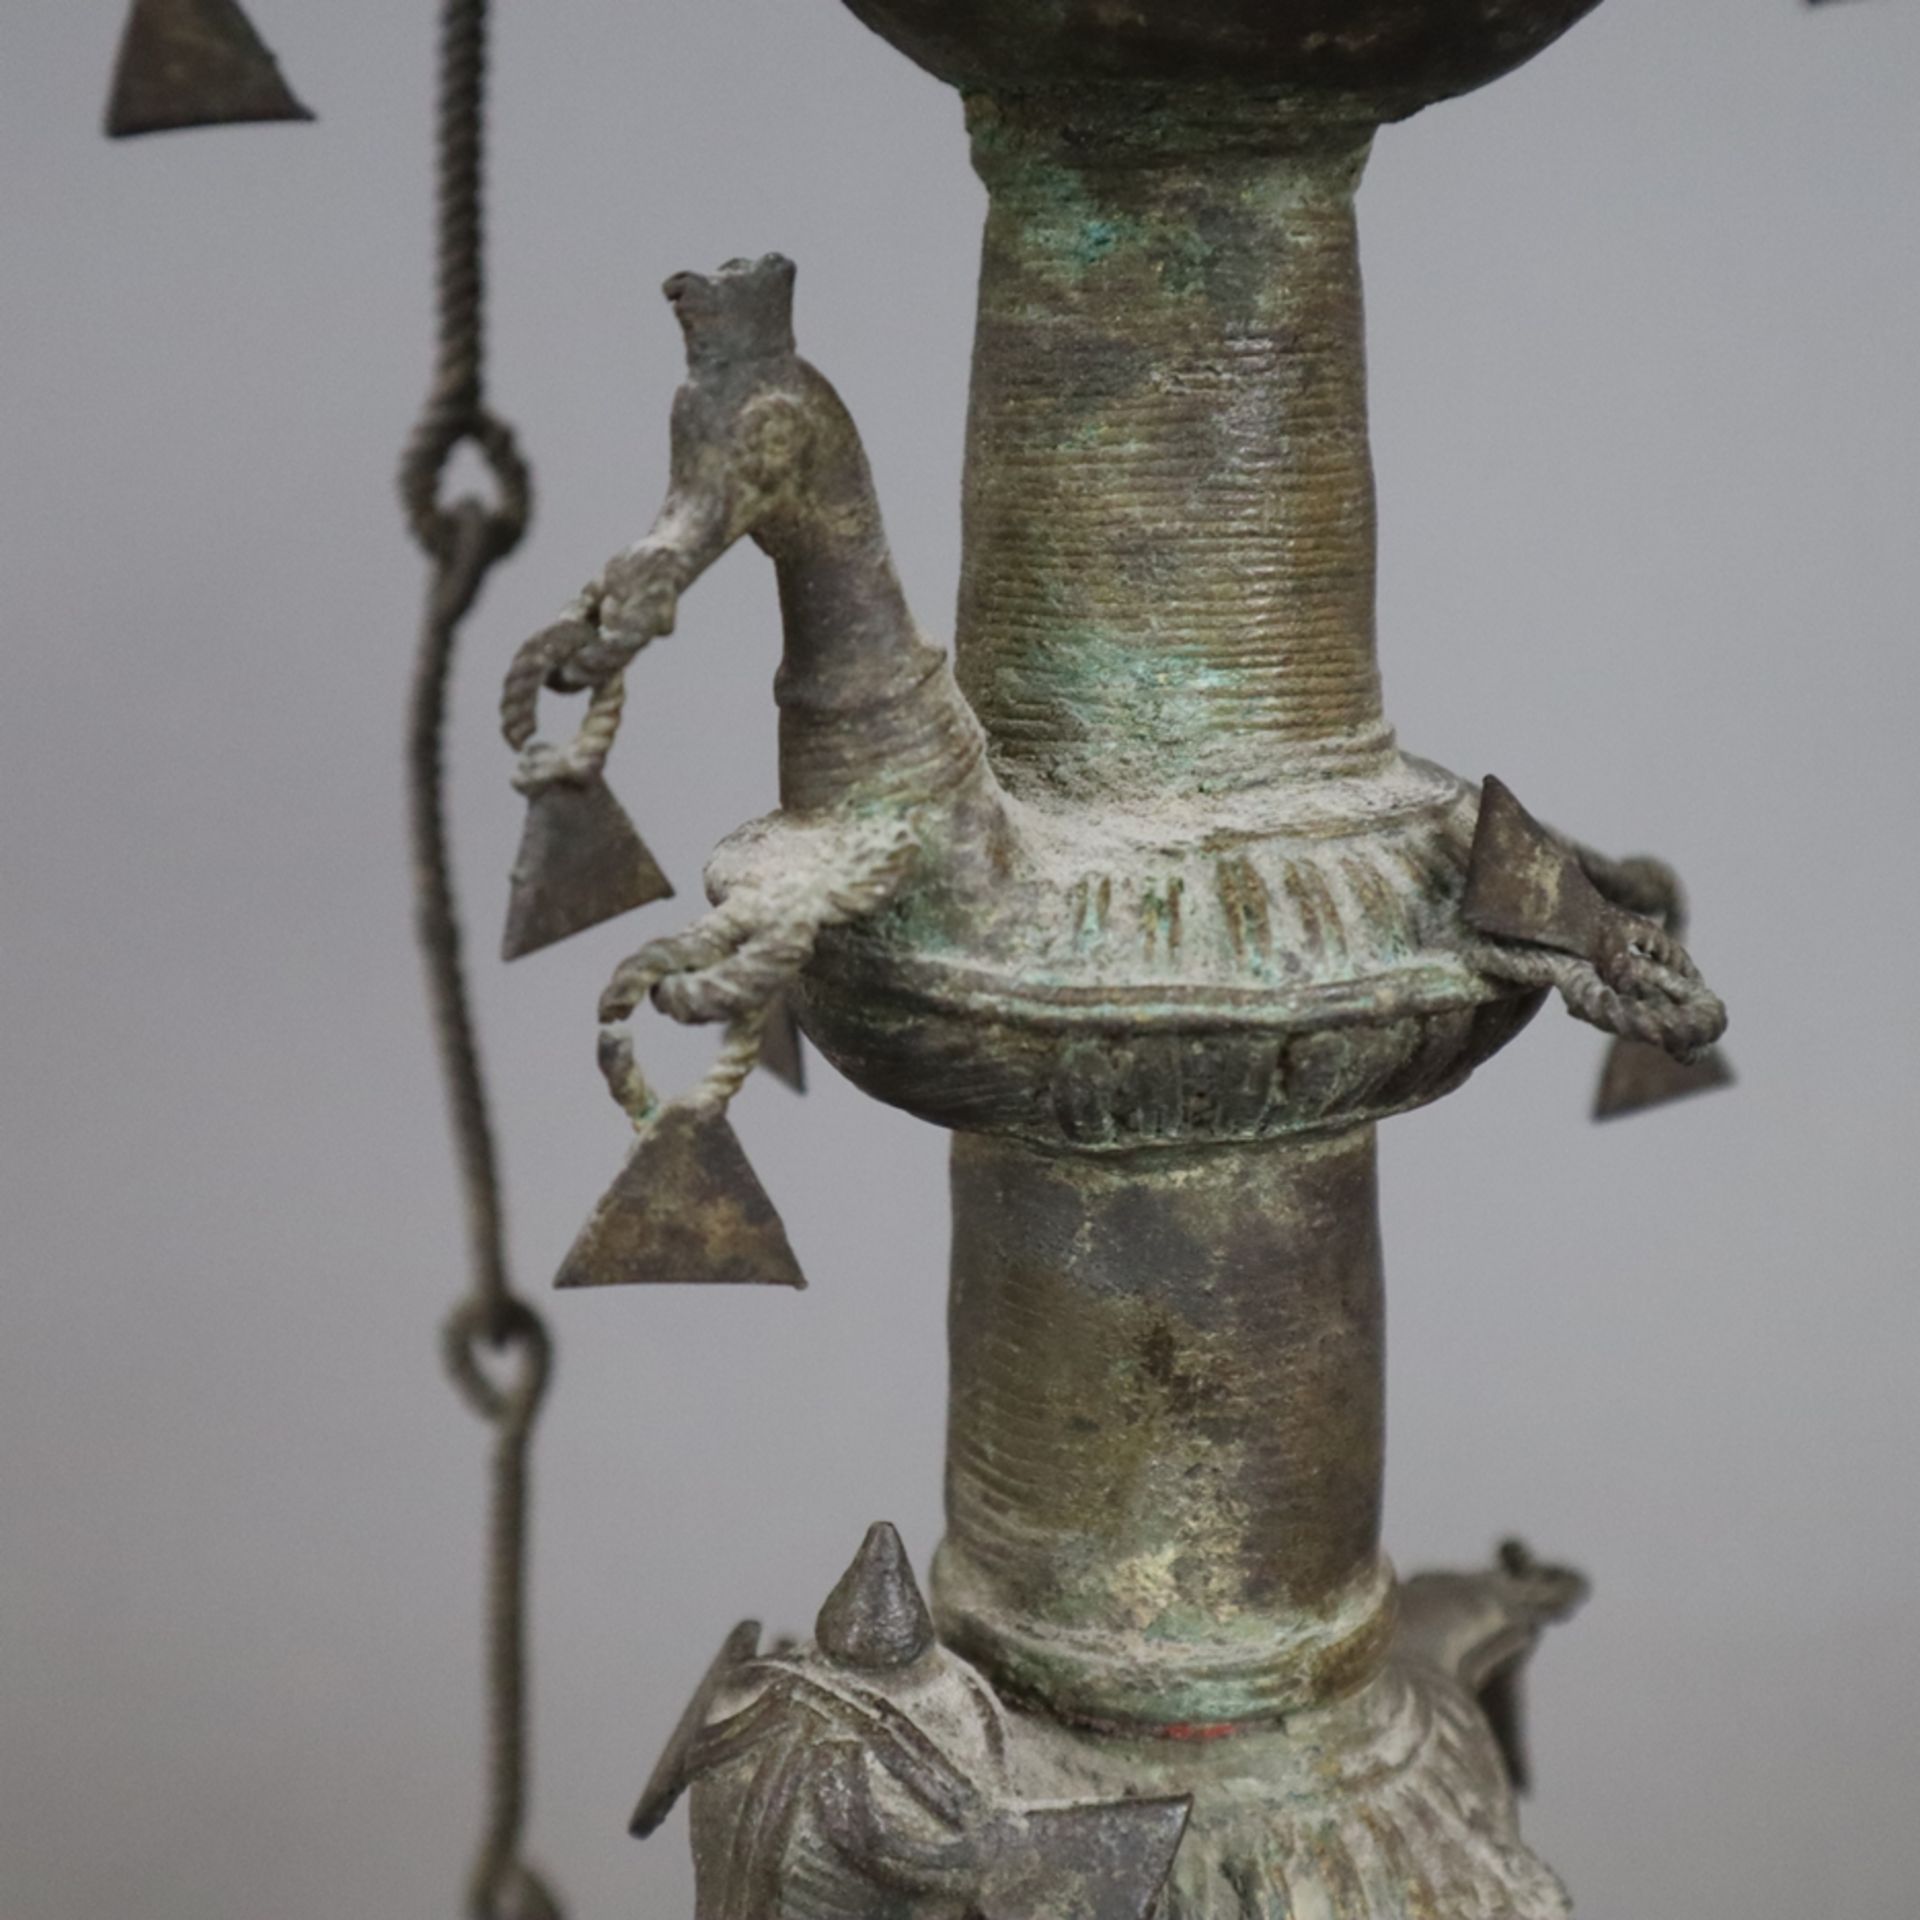 Hohe Öllampe - Indien, Bastar-Region, Bronze mit Alterspatina, über gewölbtem Fuß gegliederter Scha - Image 5 of 9